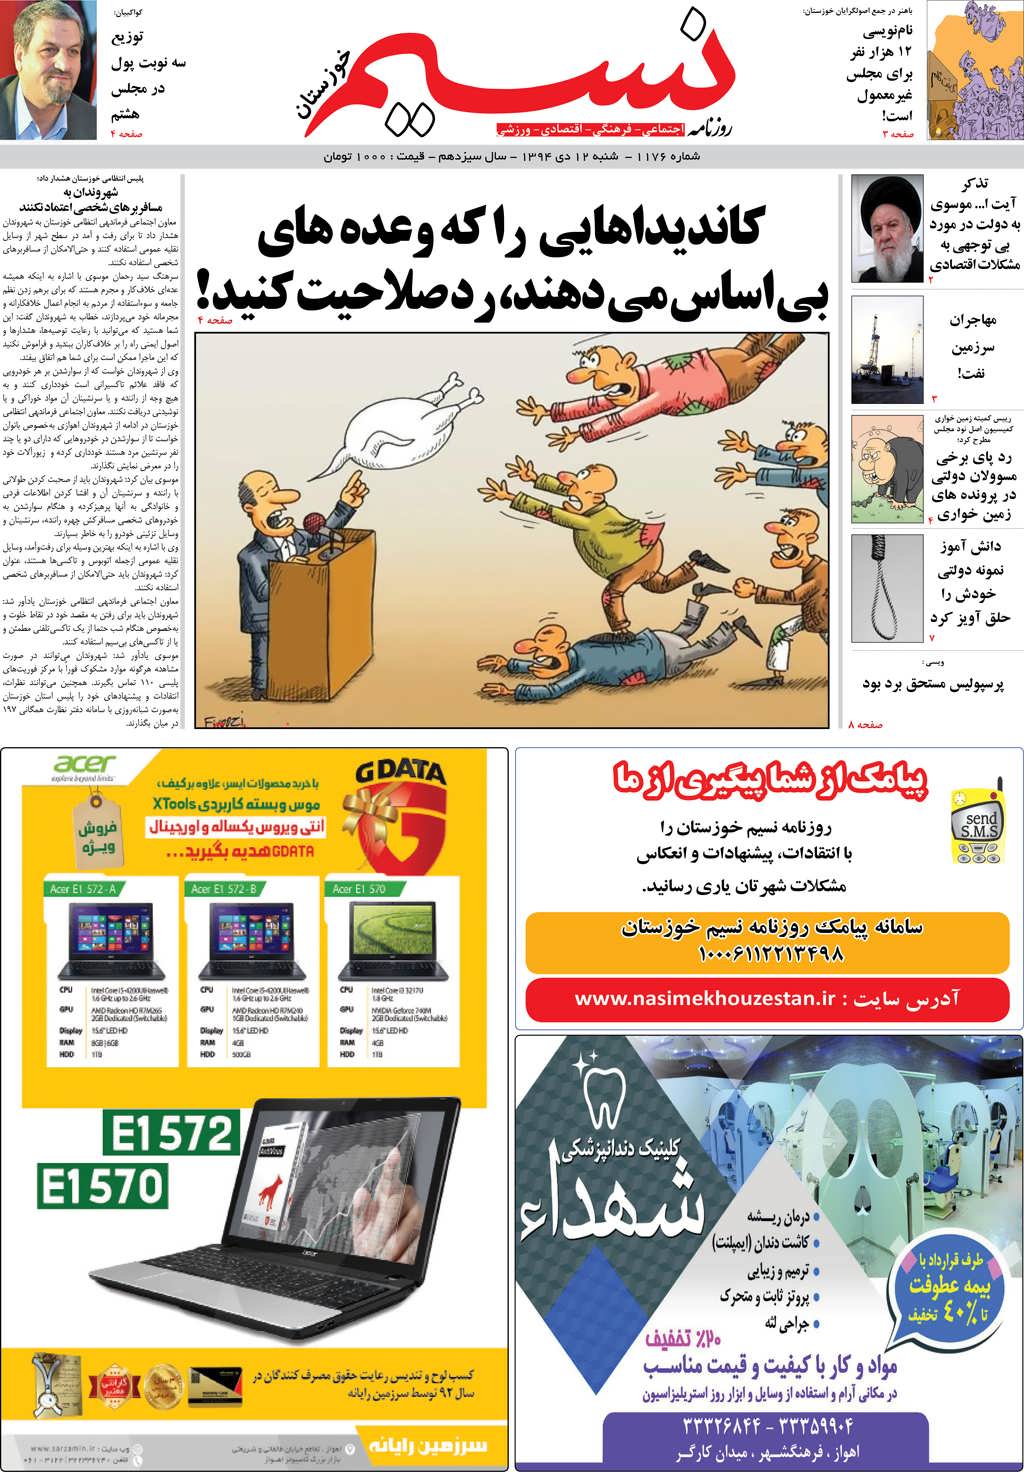 صفحه اصلی روزنامه نسیم شماره 1176